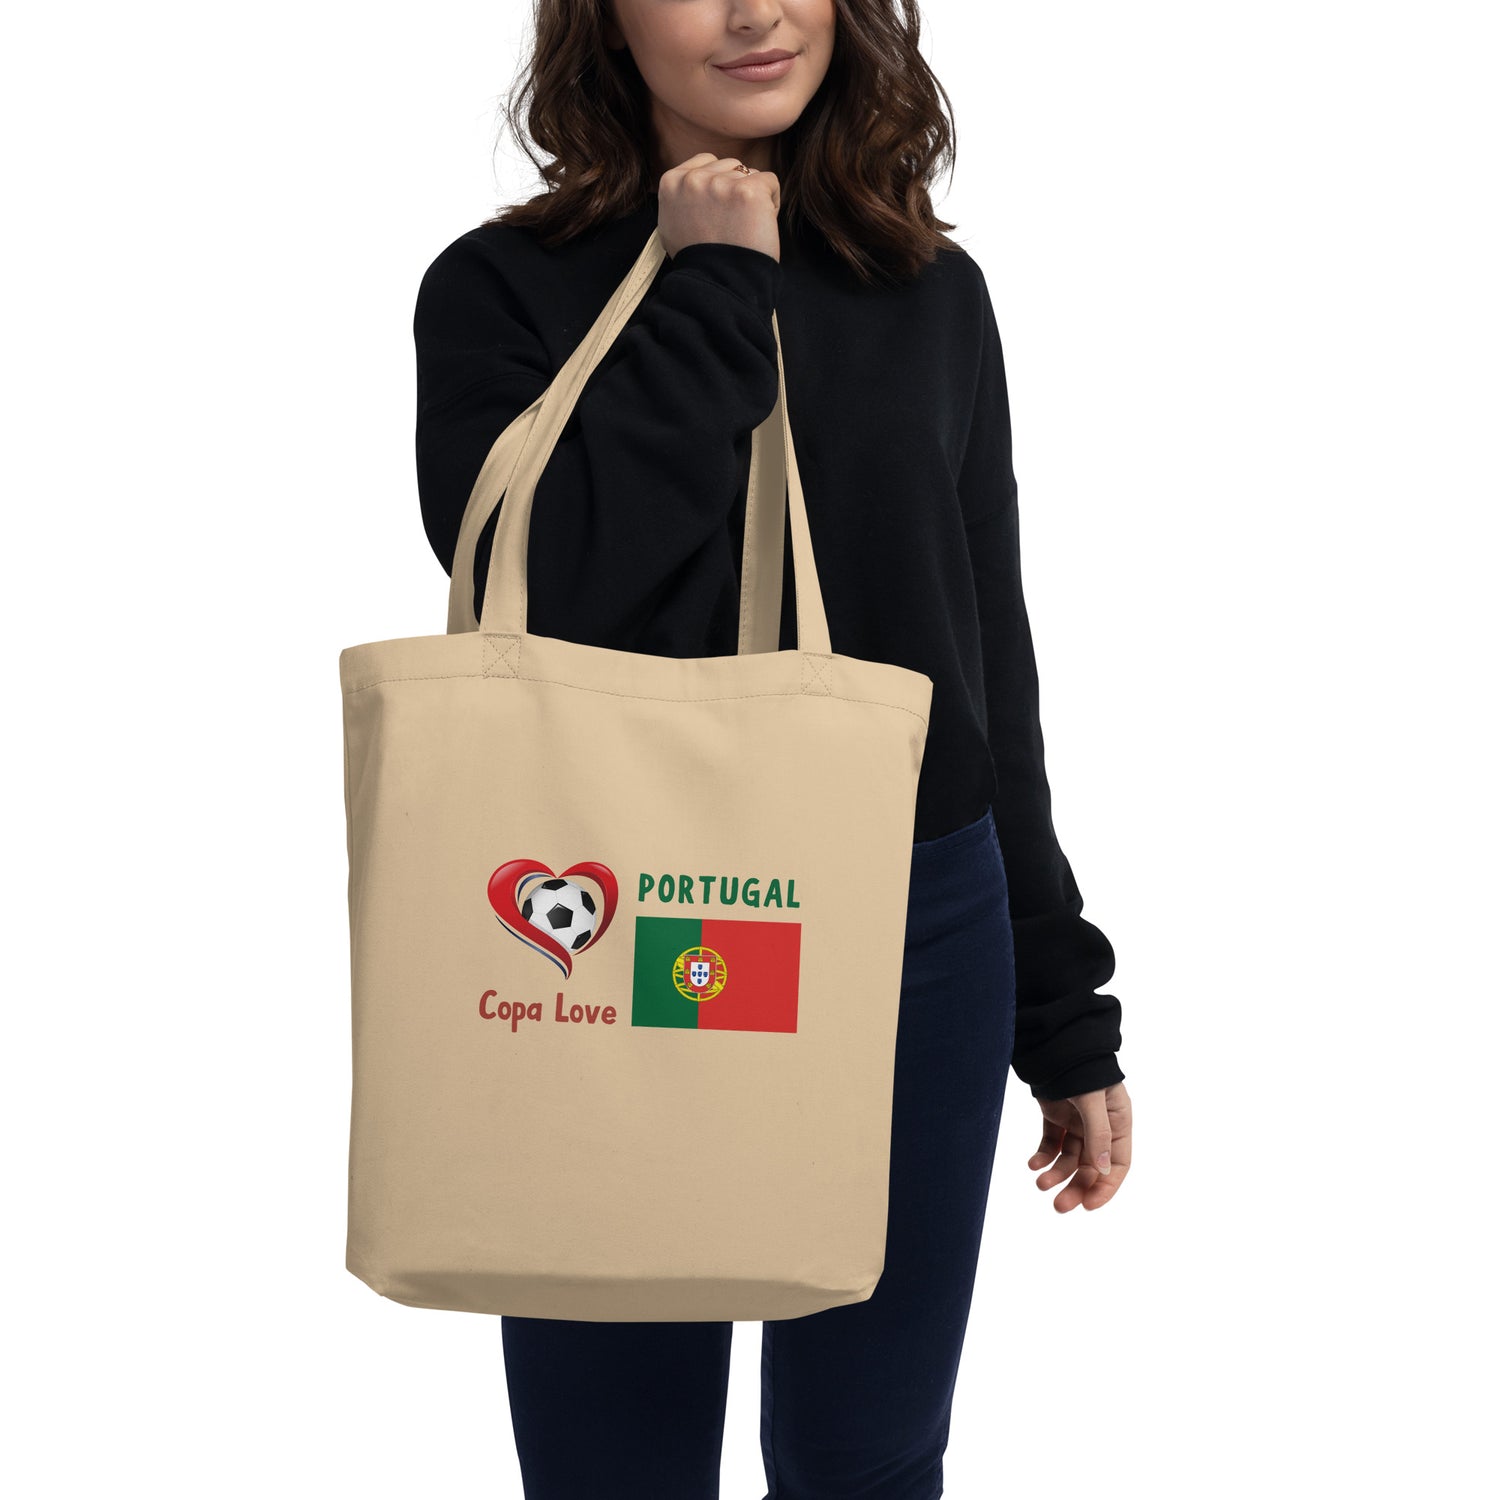 PORTUGAL - Copa Love Eco Tote Bag